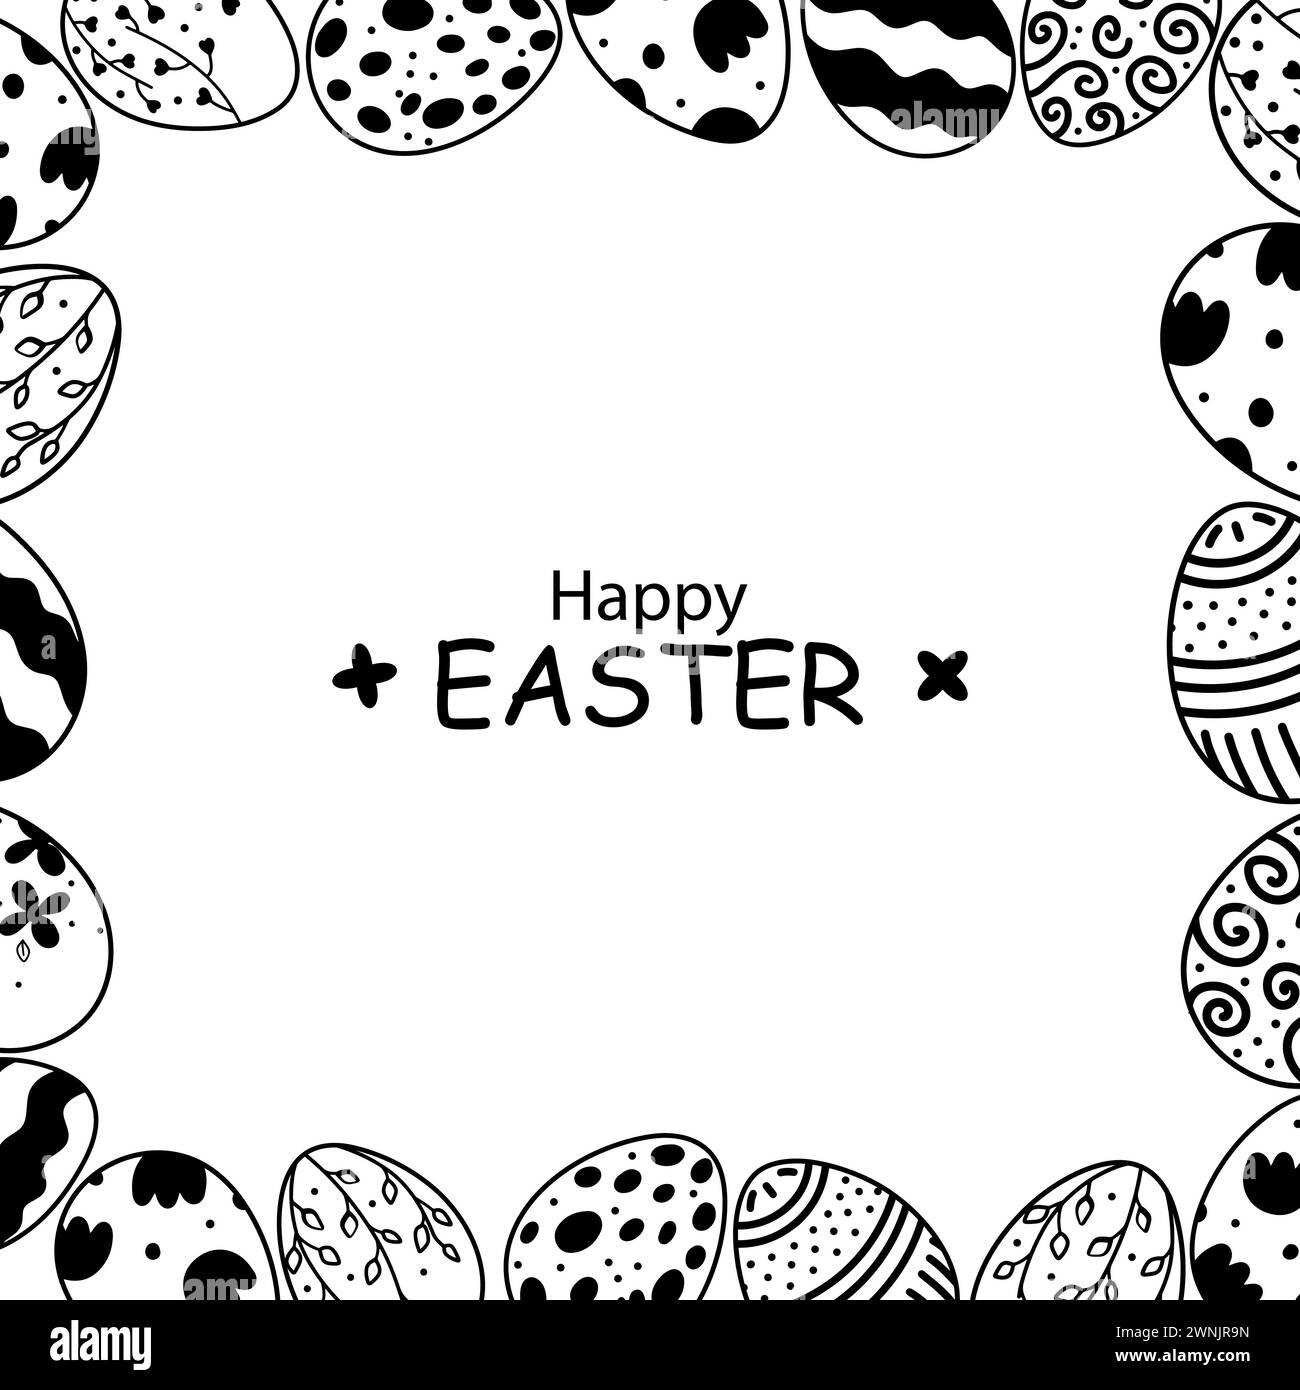 Carte Doodle pour la décoration de Pâques. Silhouettes noires et blanches d'oeufs dans un style vintage Illustration de Vecteur